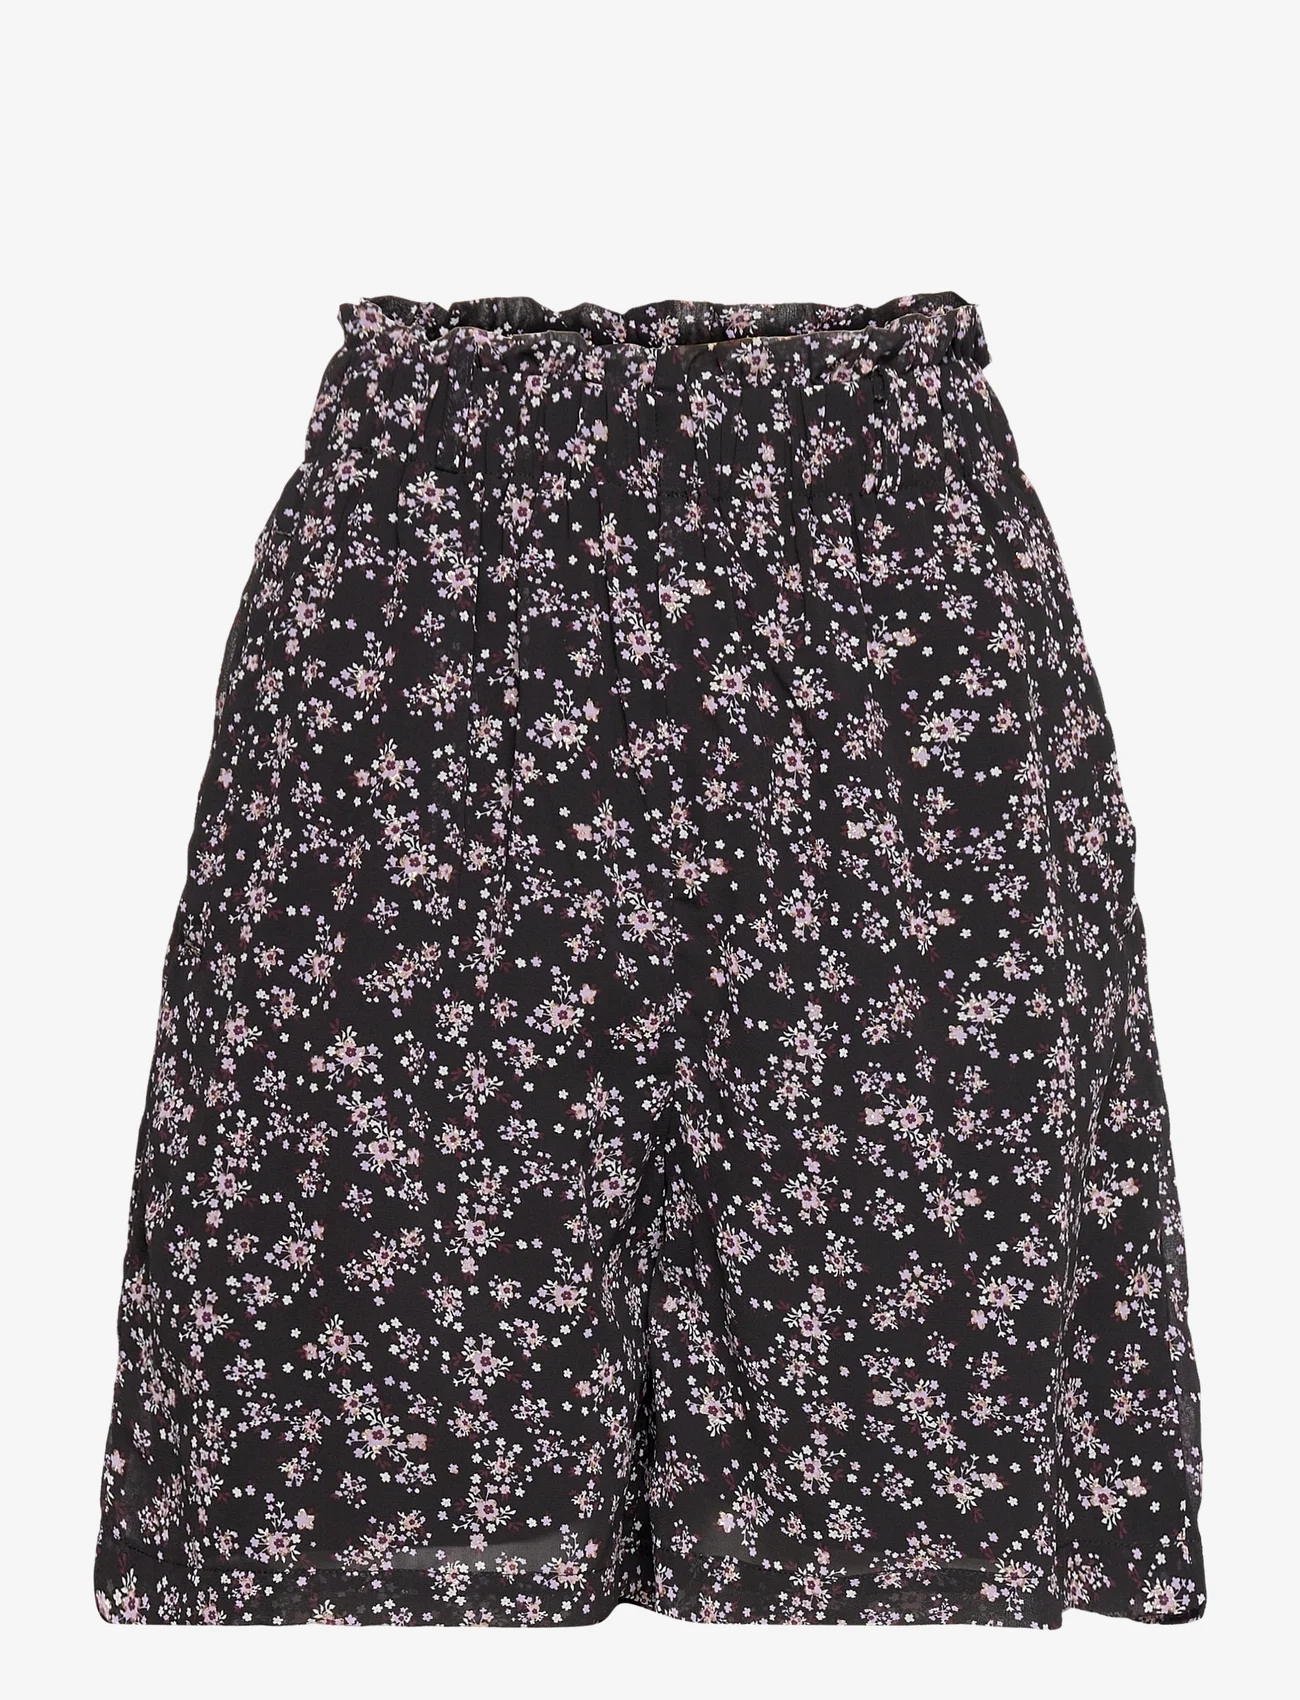 Lollys Laundry - Blanca Shorts - korte nederdele - 99 black - 0